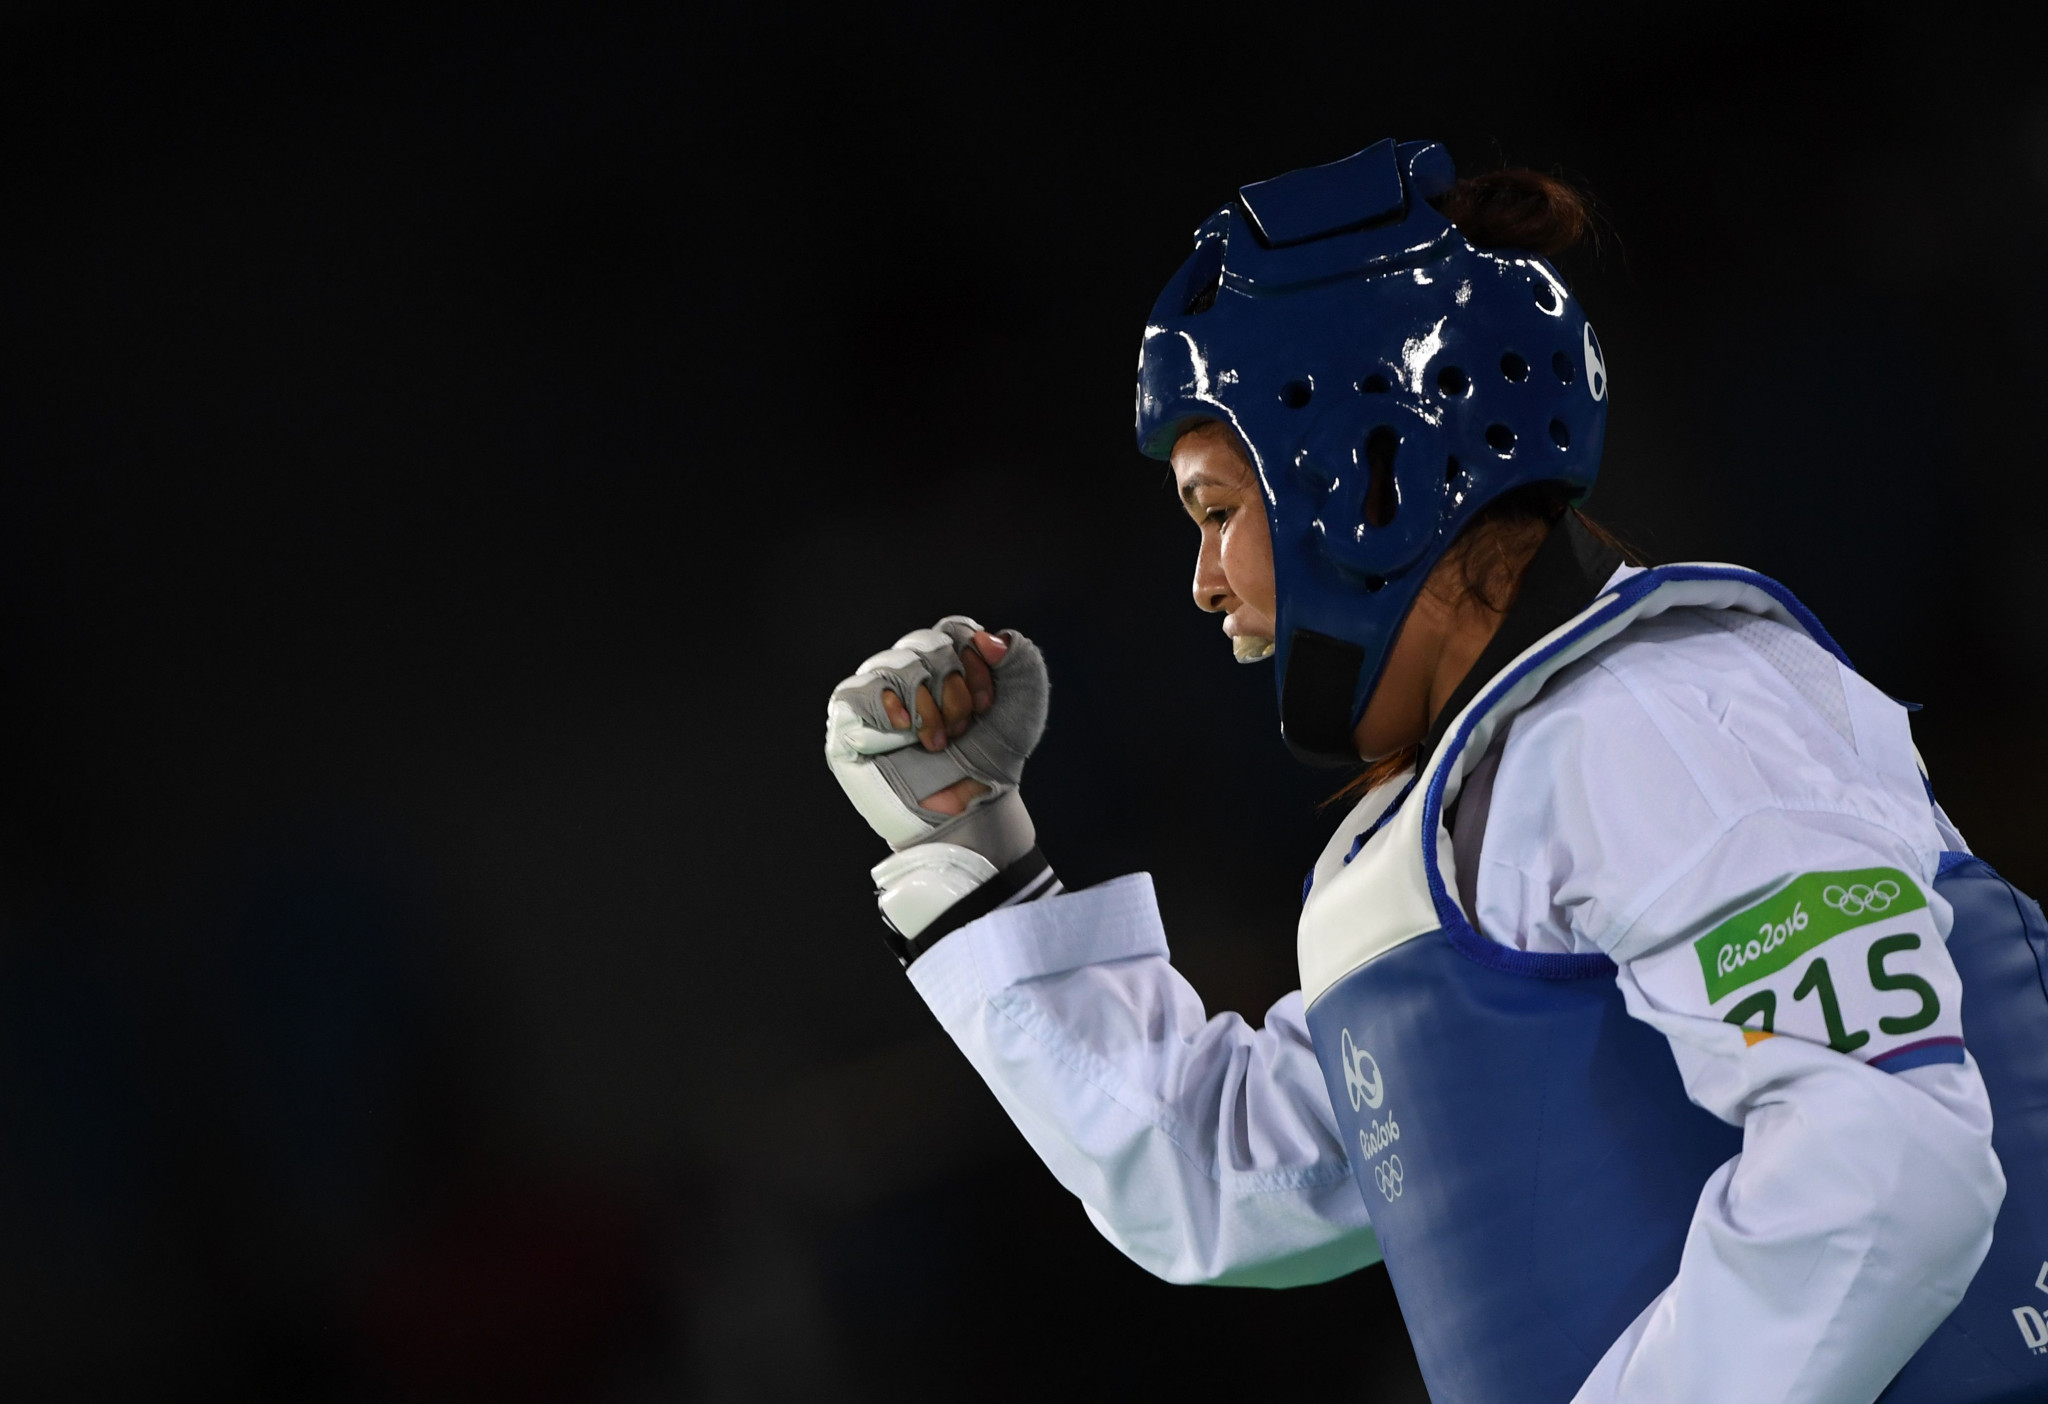 Nepal had seven athletes represent the nation at Rio 2016 including Nisha Rawal in taekwondo ©Getty Images